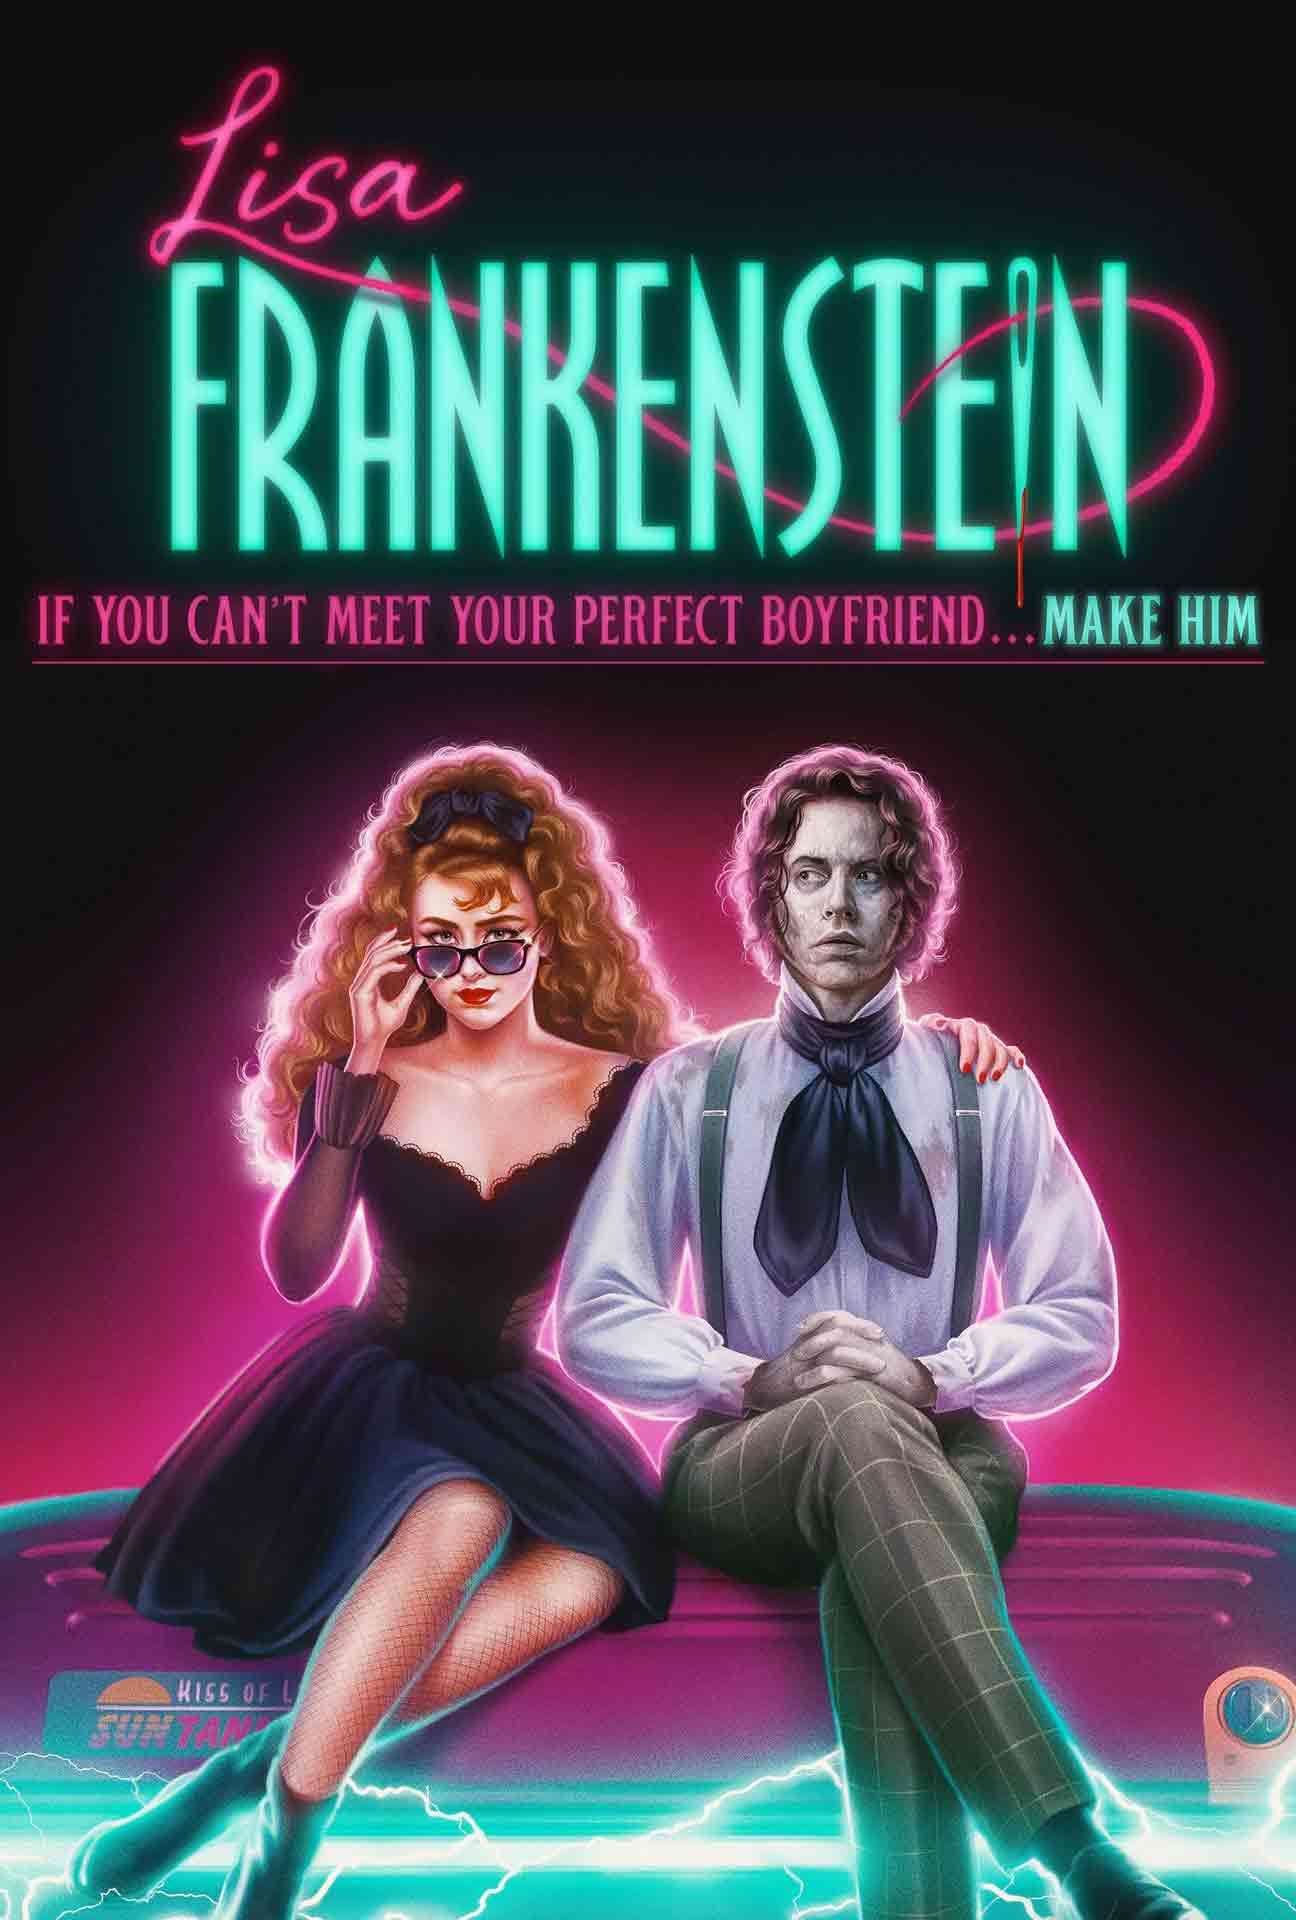 Movie Poster for Lisa Frankenstein